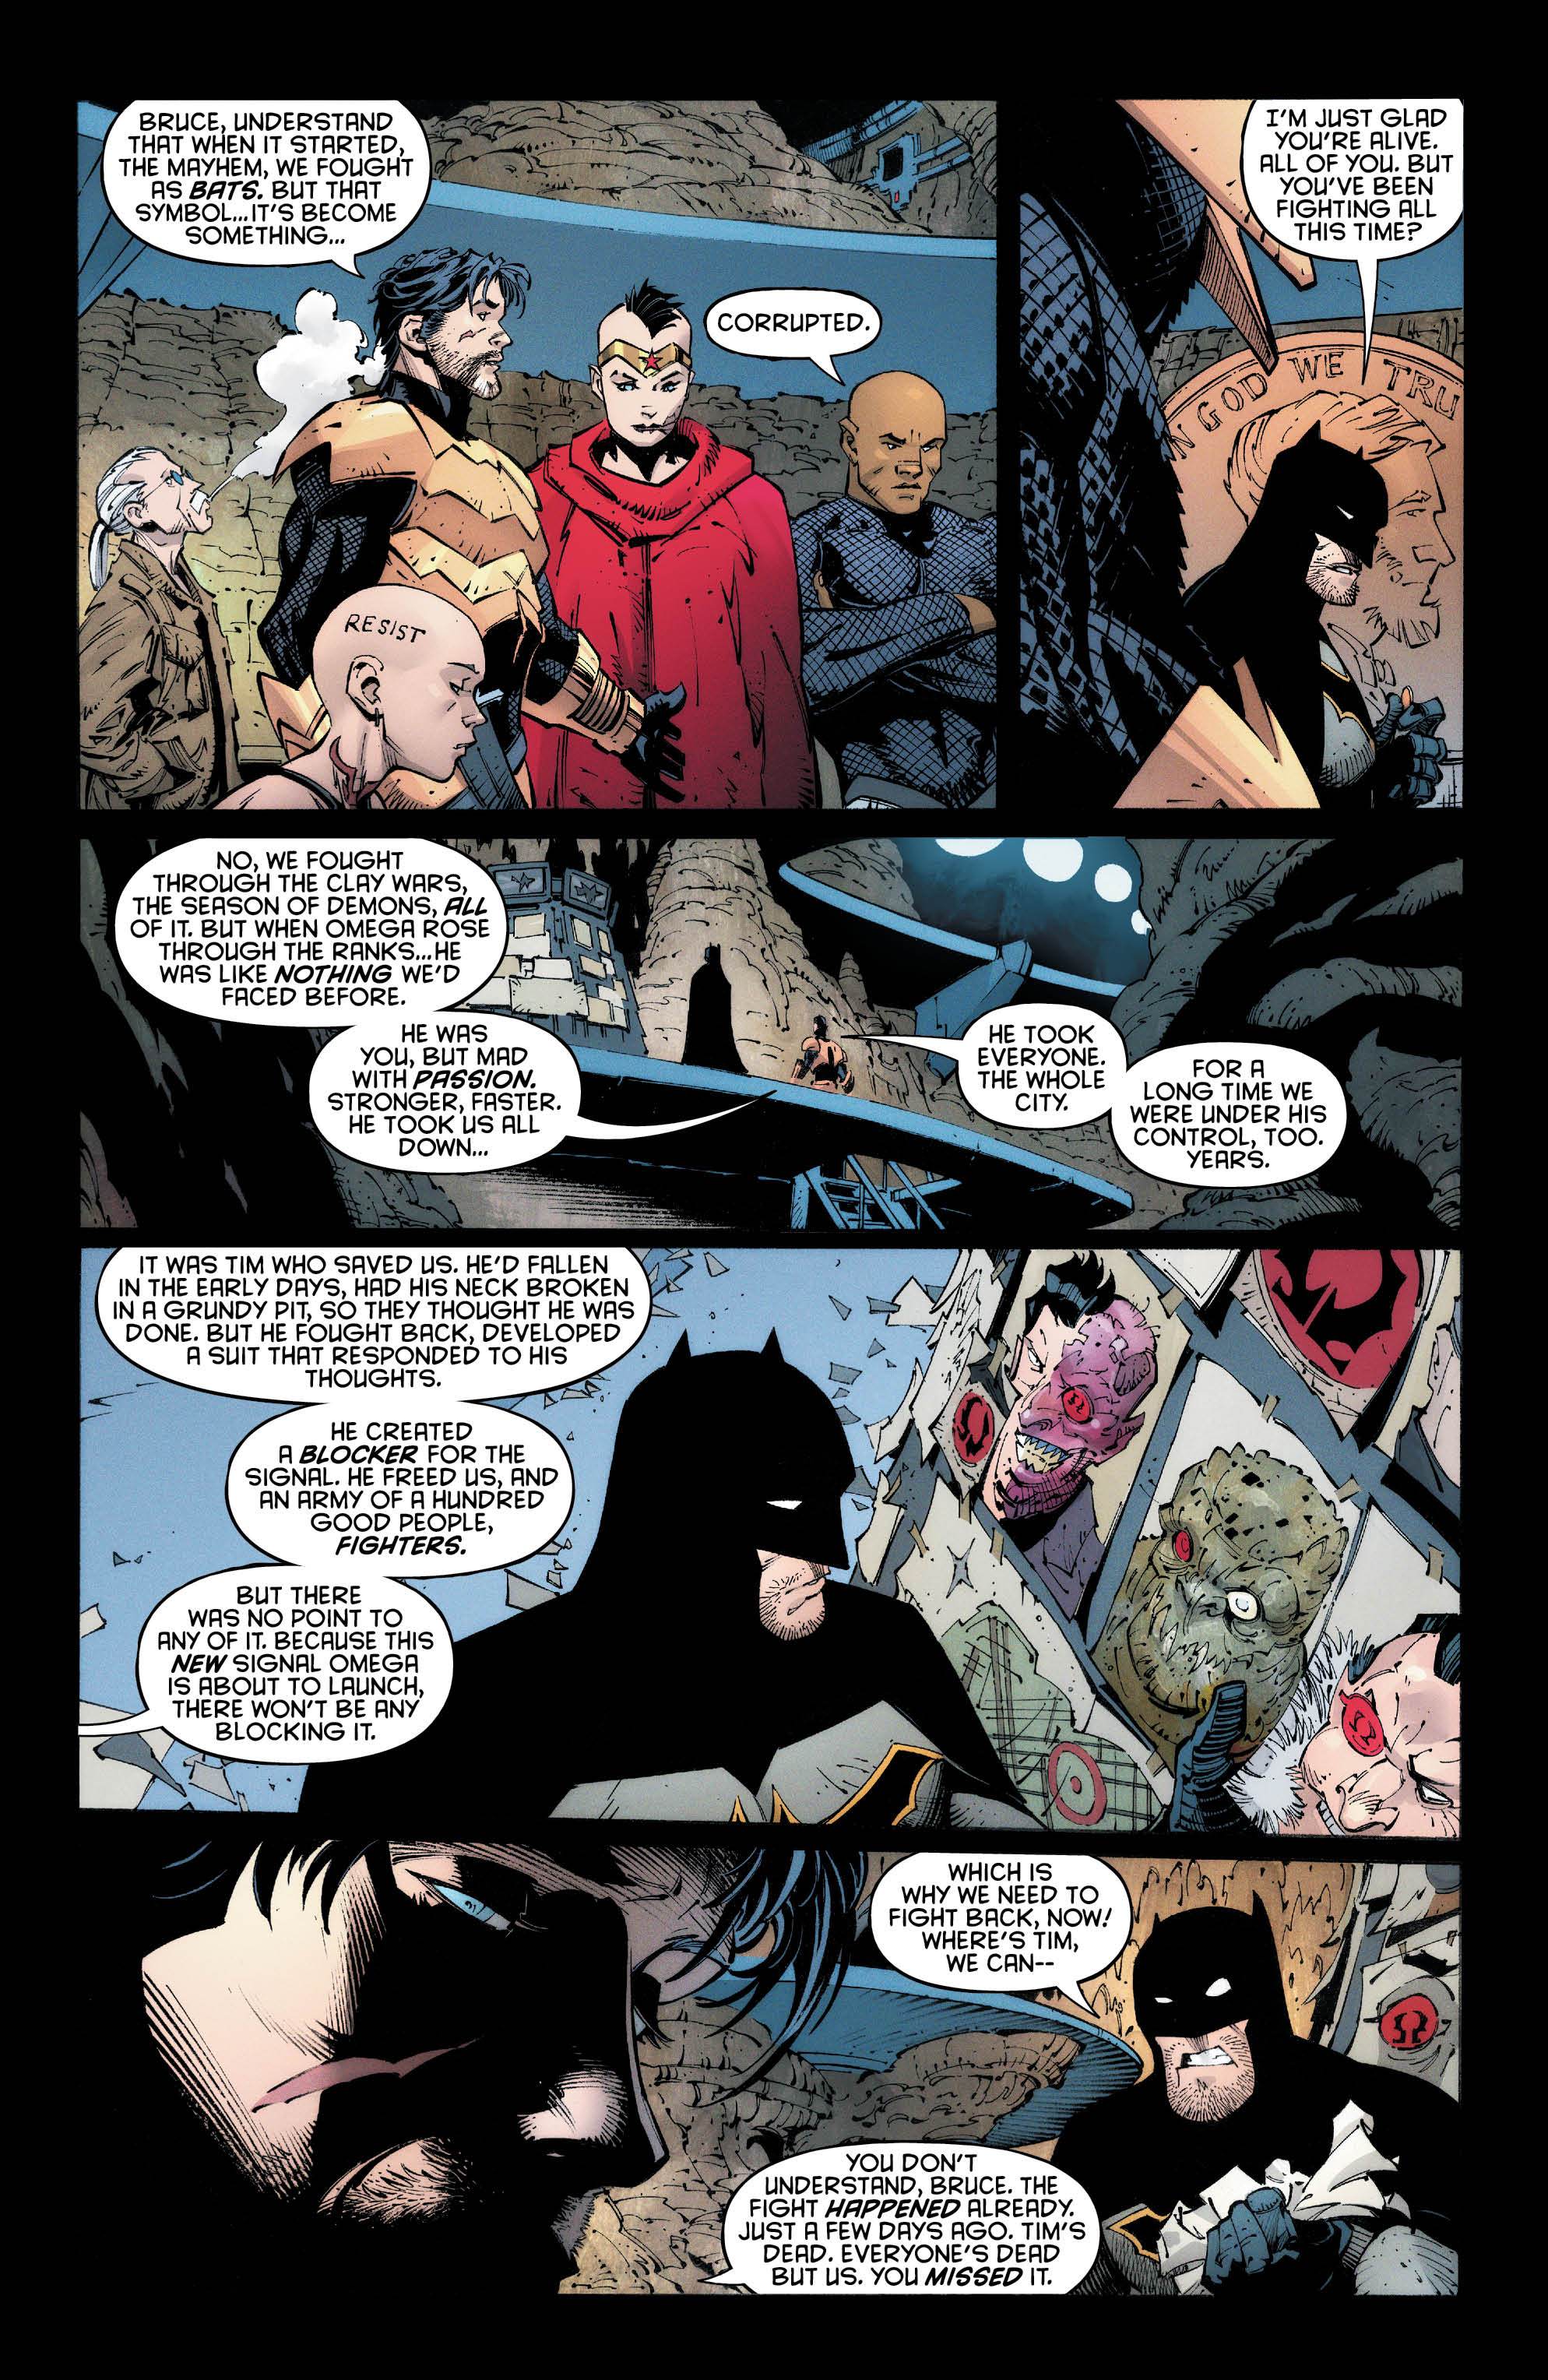 Why Batman Last Knight On Earth Is The Last Batman Story Den Of Geek